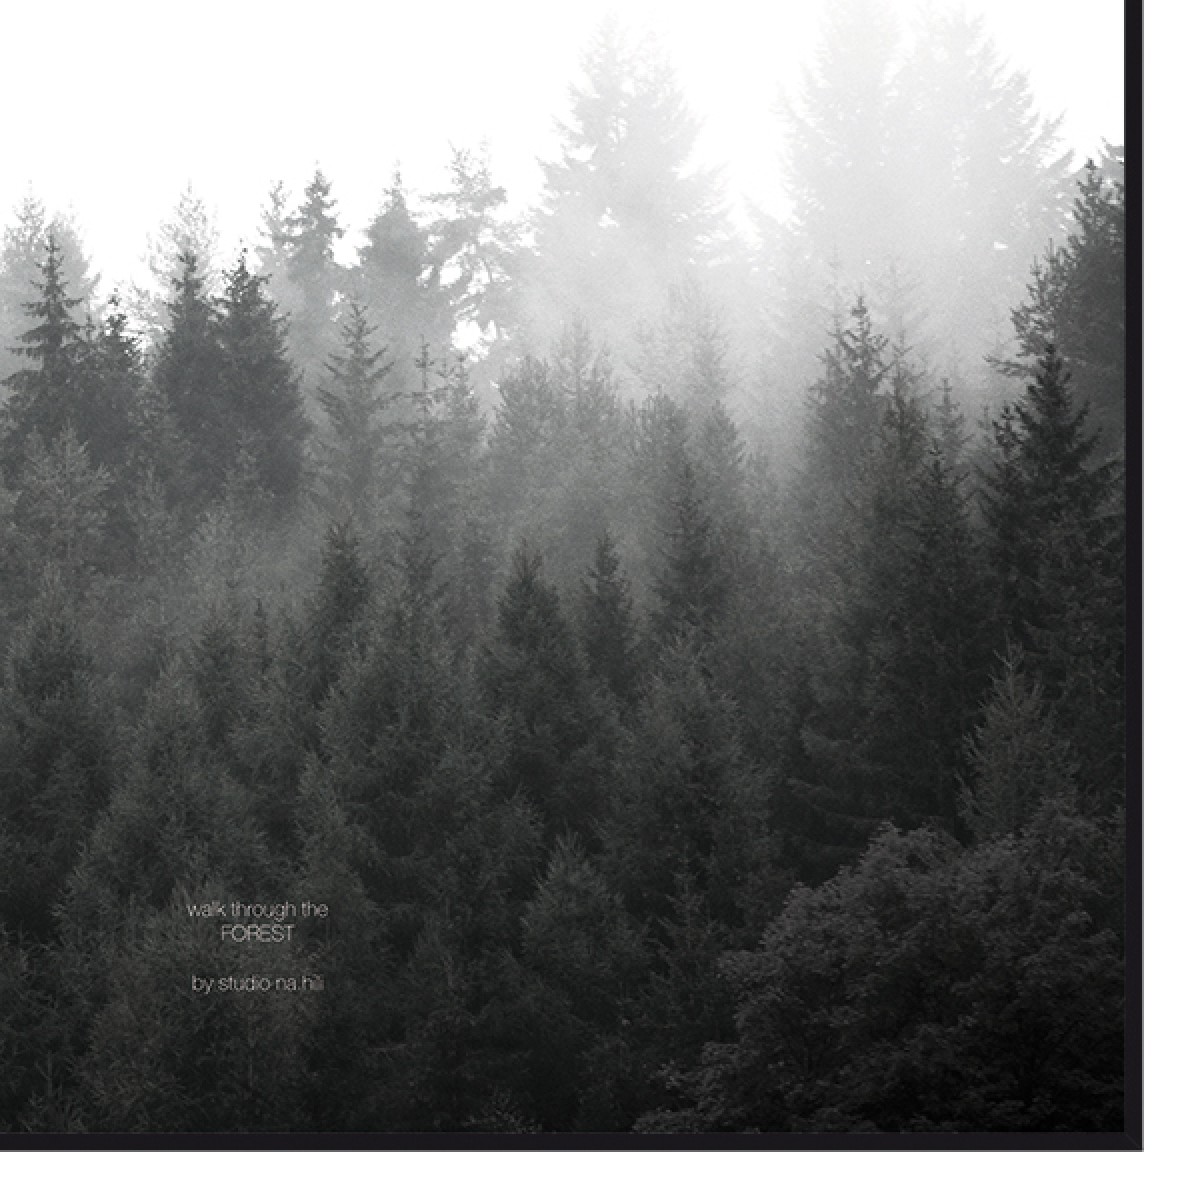 nahili ARTPRINT/POSTER "walk through the FOREST" (DIN A1/A3 & 50x70cm) Wald Natur-Fotografie